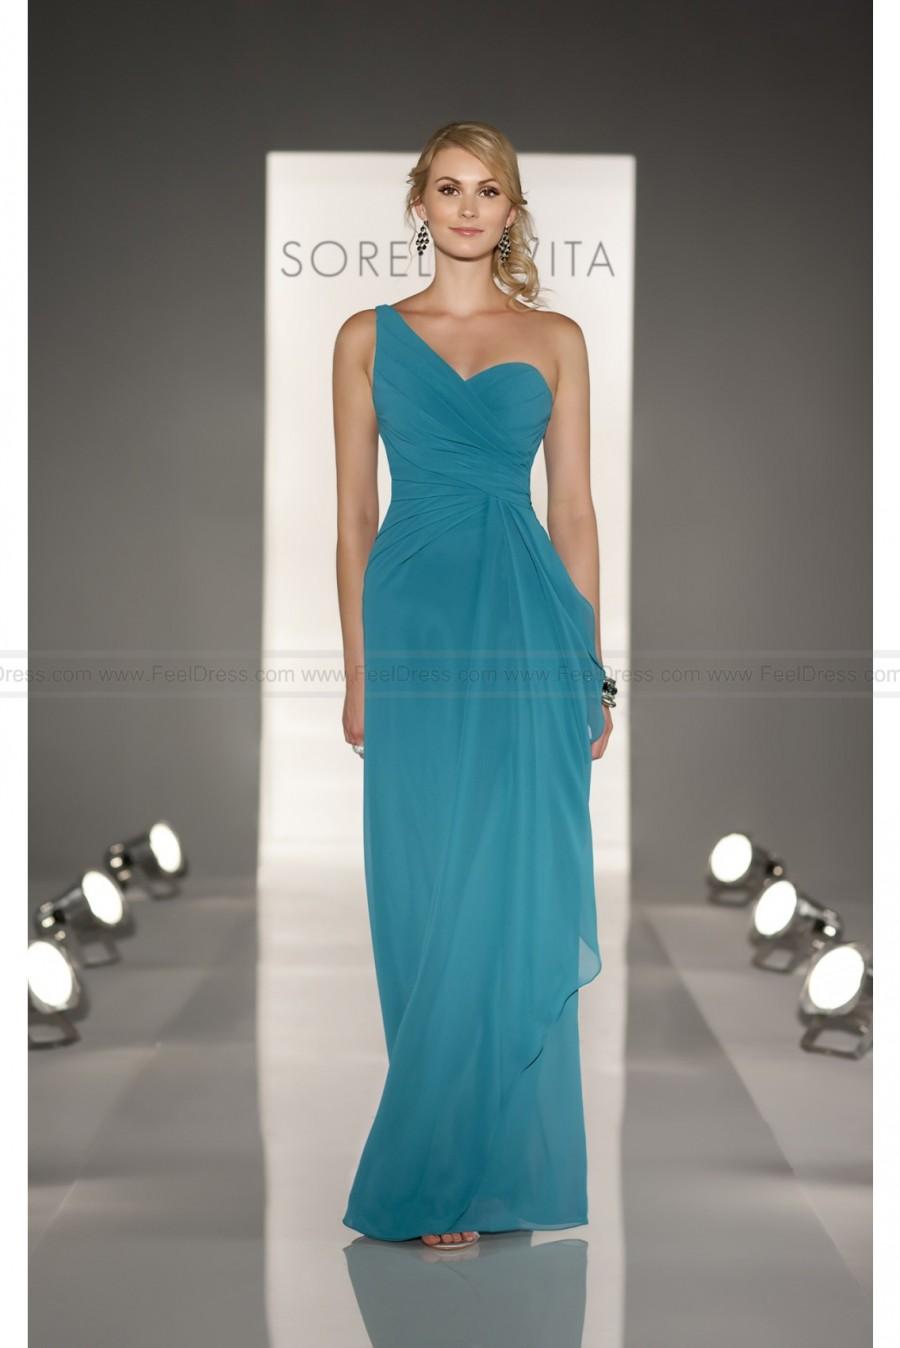 زفاف - Sorella Vita Romantic Bridesmaid Dress Style 8201